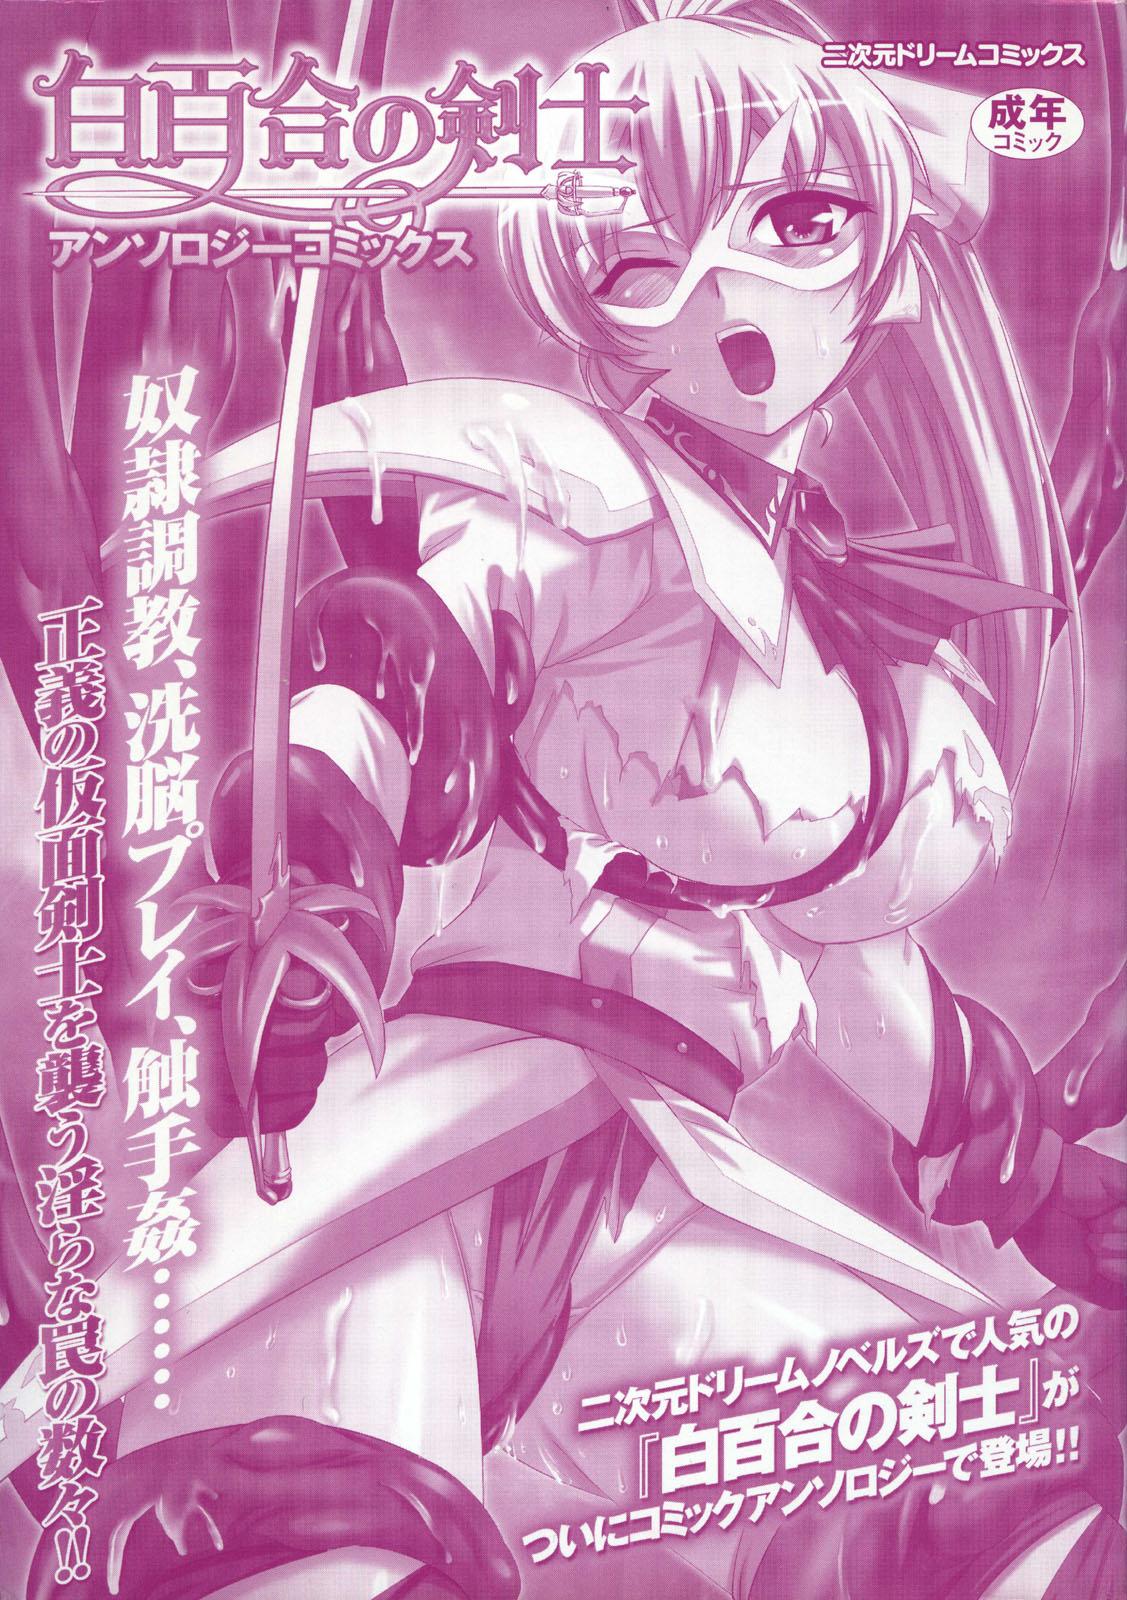 Shirayuri no Kenshi Anthology Comics 2